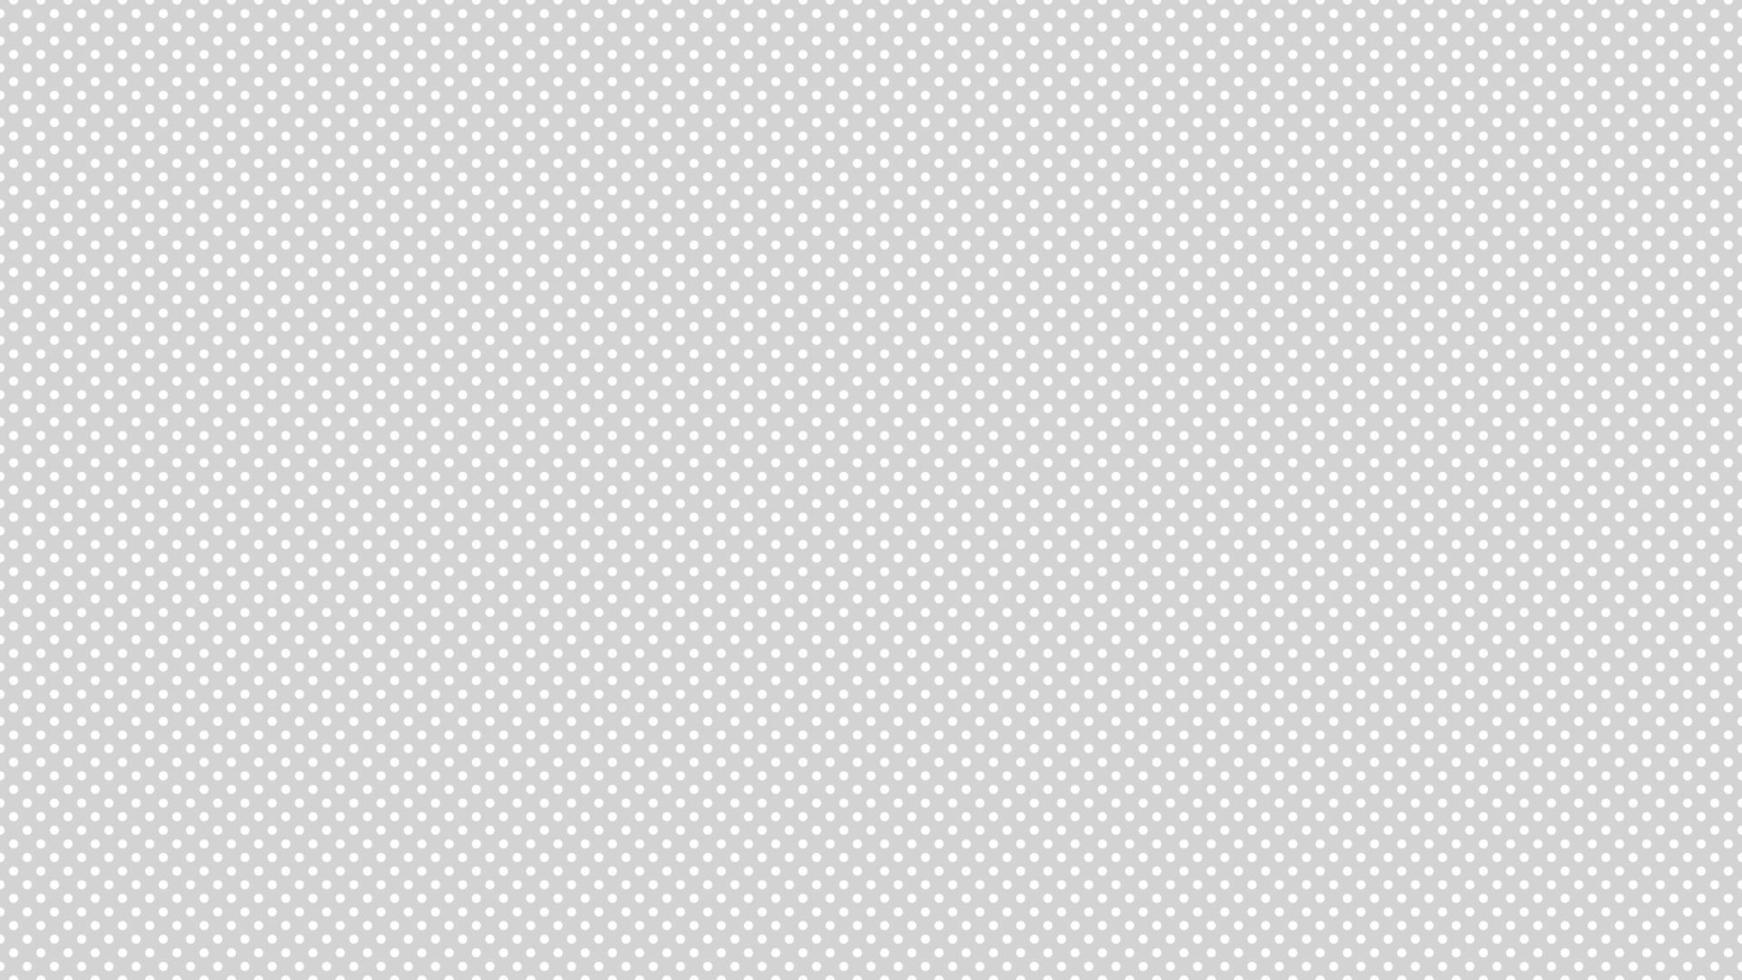 bianca colore polka puntini al di sopra di leggero grigio sfondo vettore